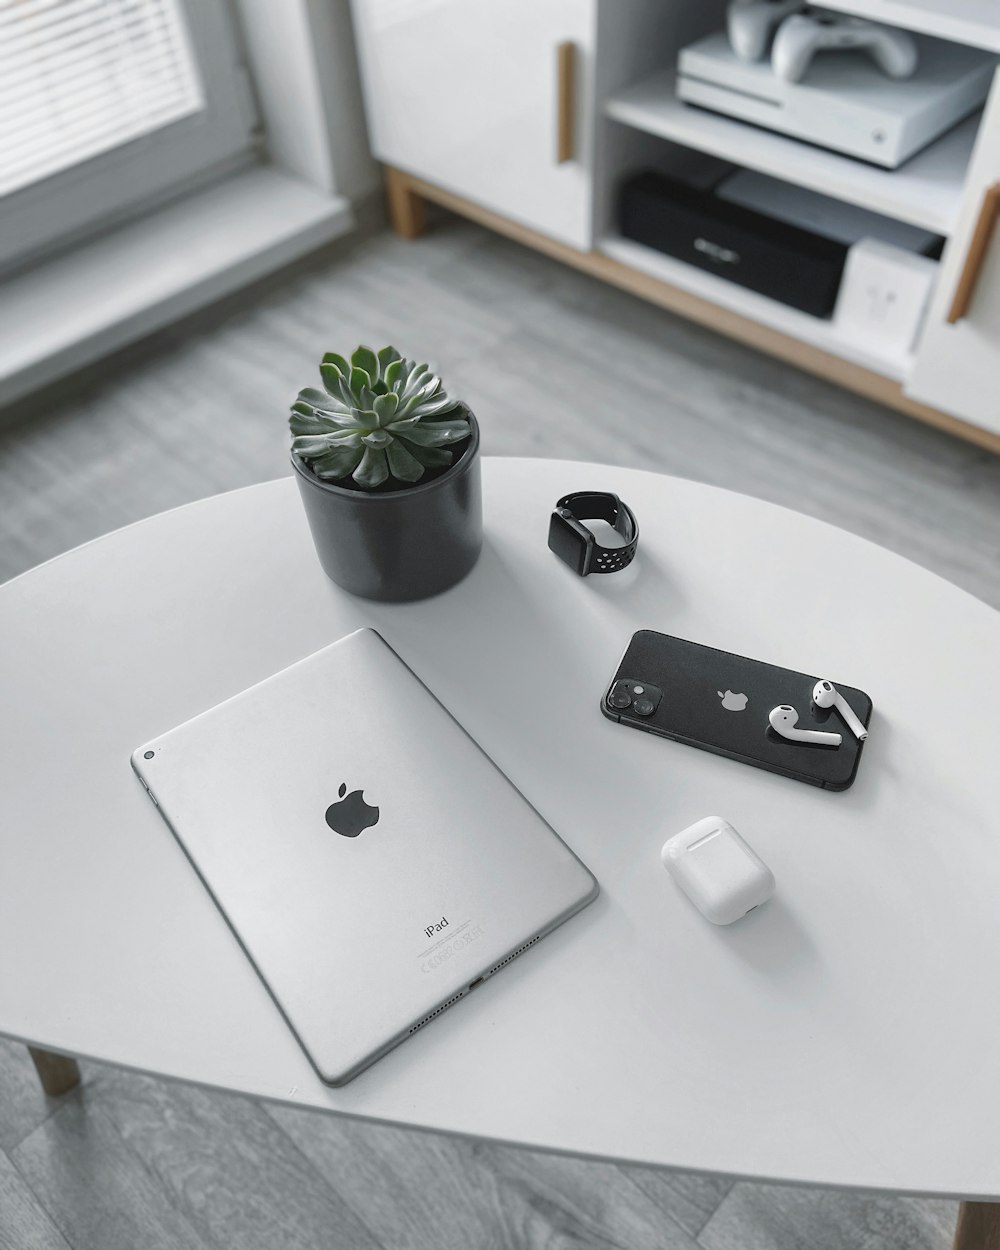 Silbernes MacBook neben weißer Apfel Magic Mouse und grüner Pflanze auf weißem Tisch